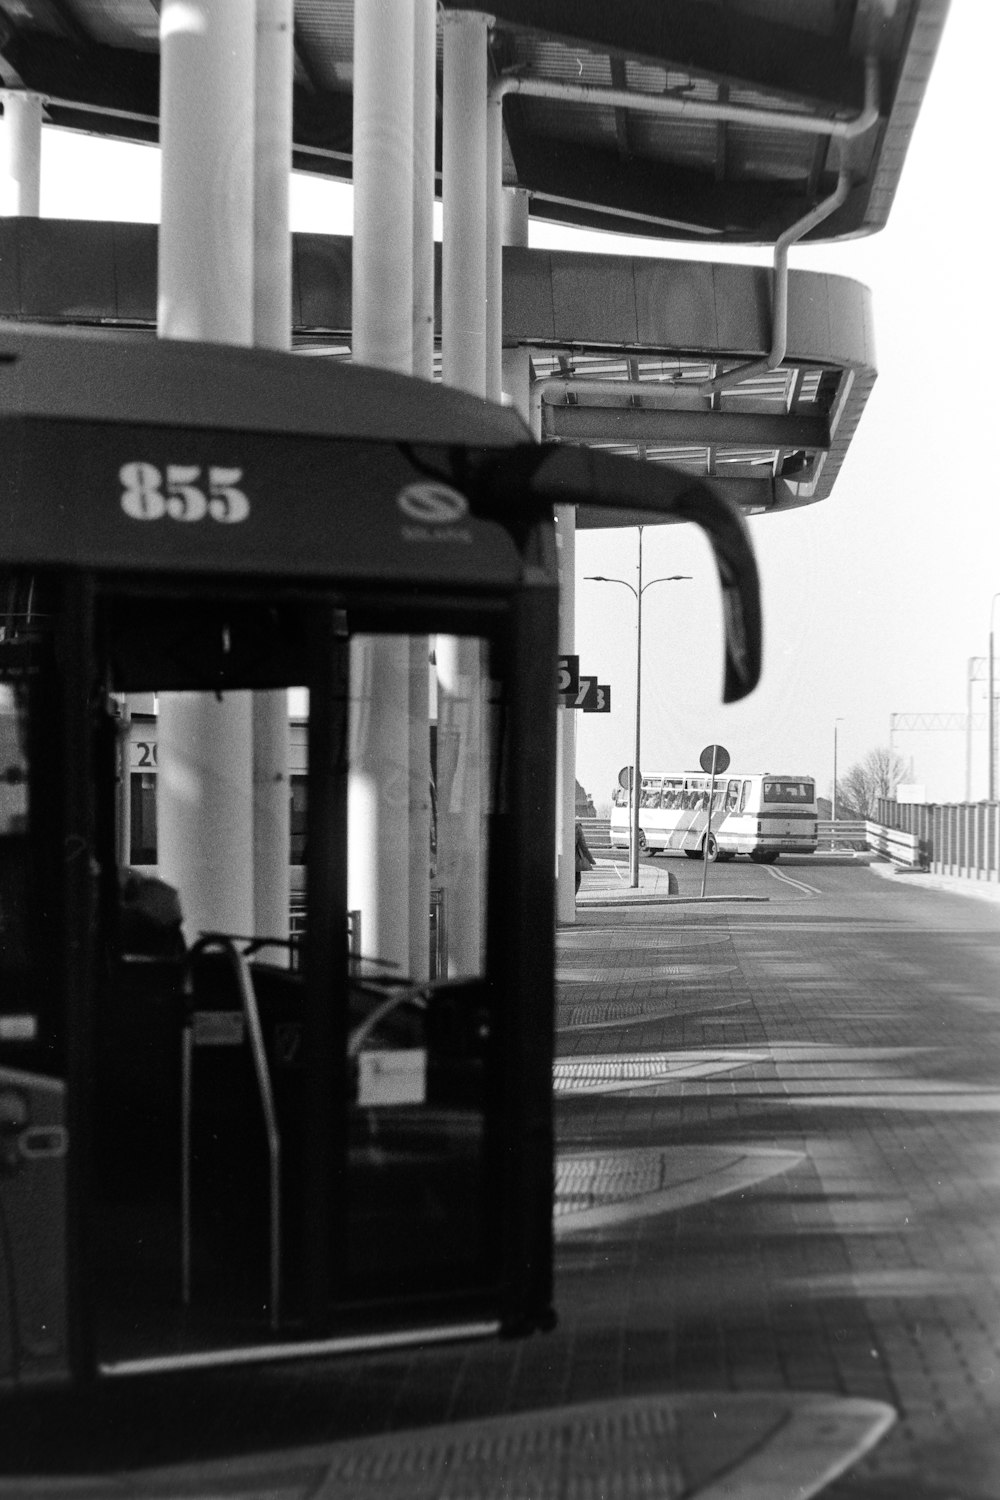 バス停でのバスの白黒写真